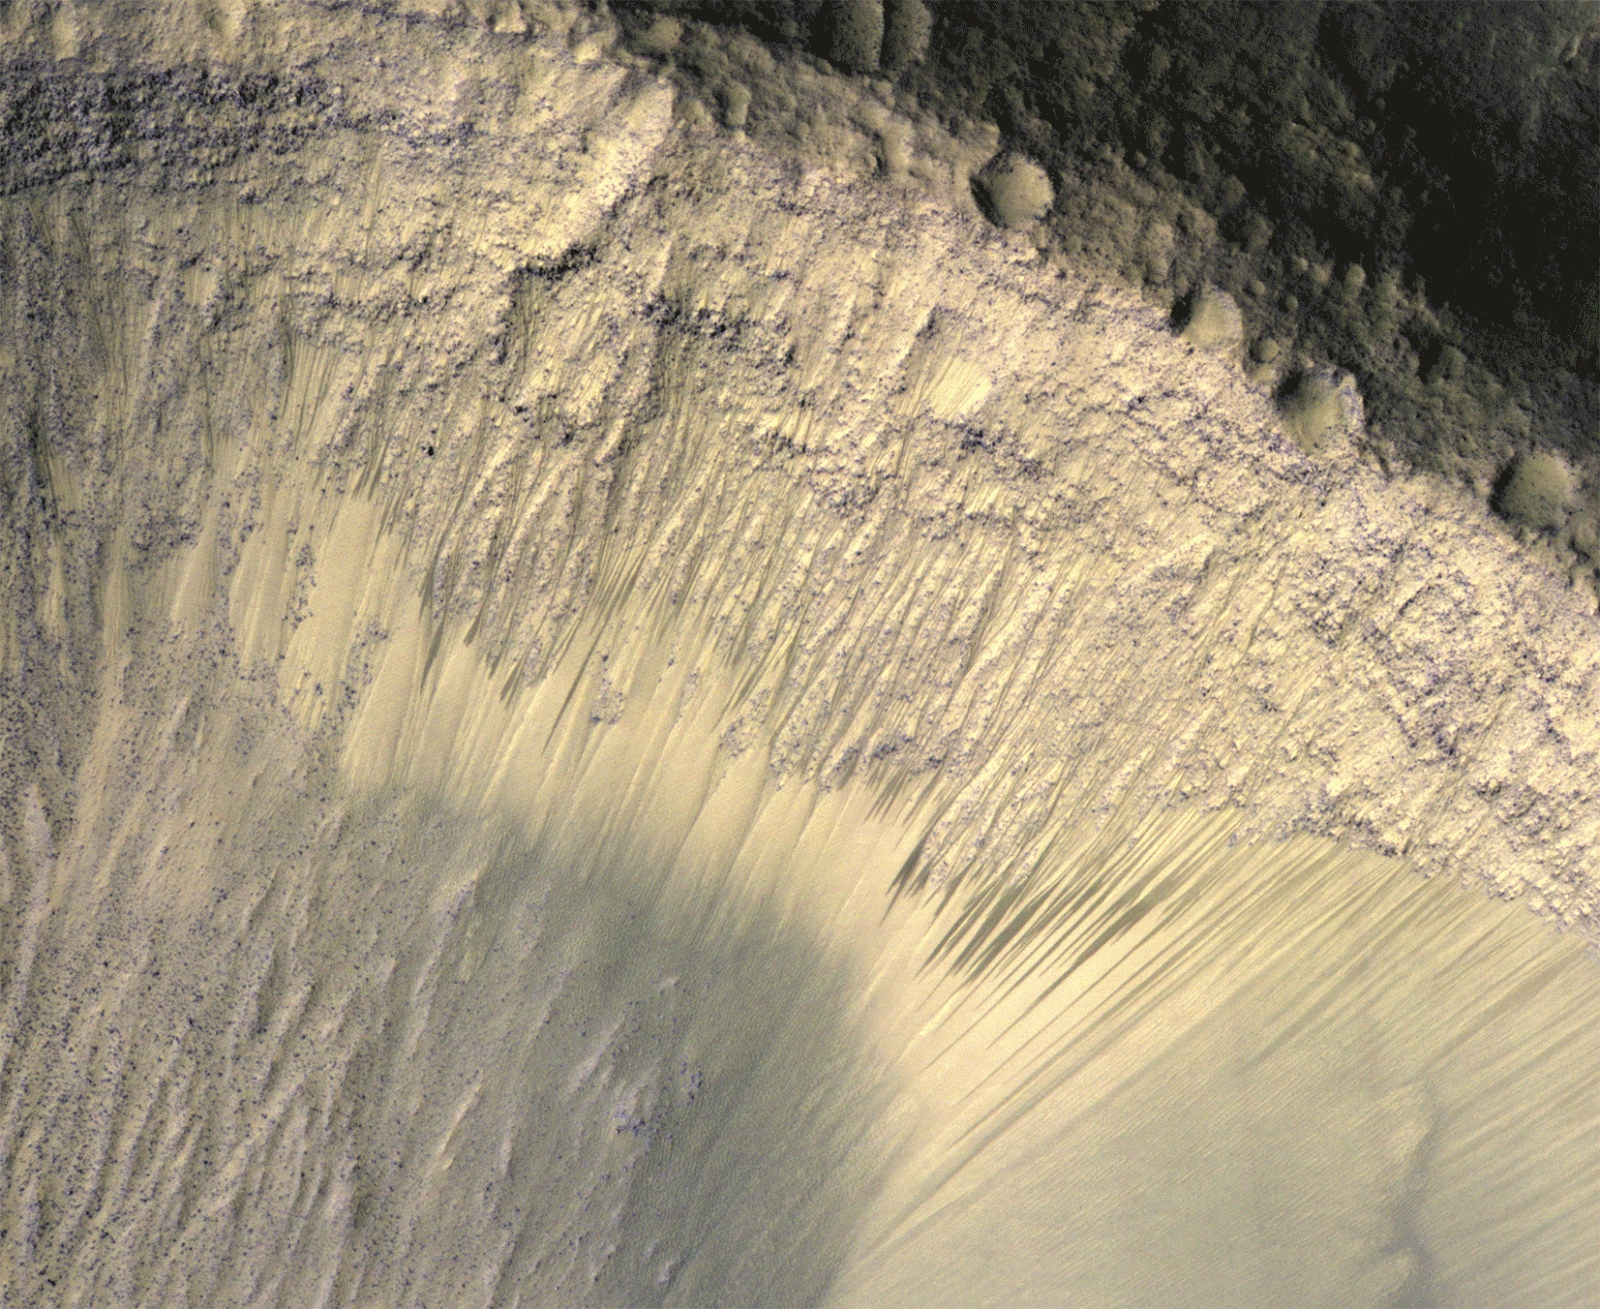 MRO НАСА. Вода на Марсе. Жидкая вода на Марсе. Ручей на Марсе. Вода на поверхности марса